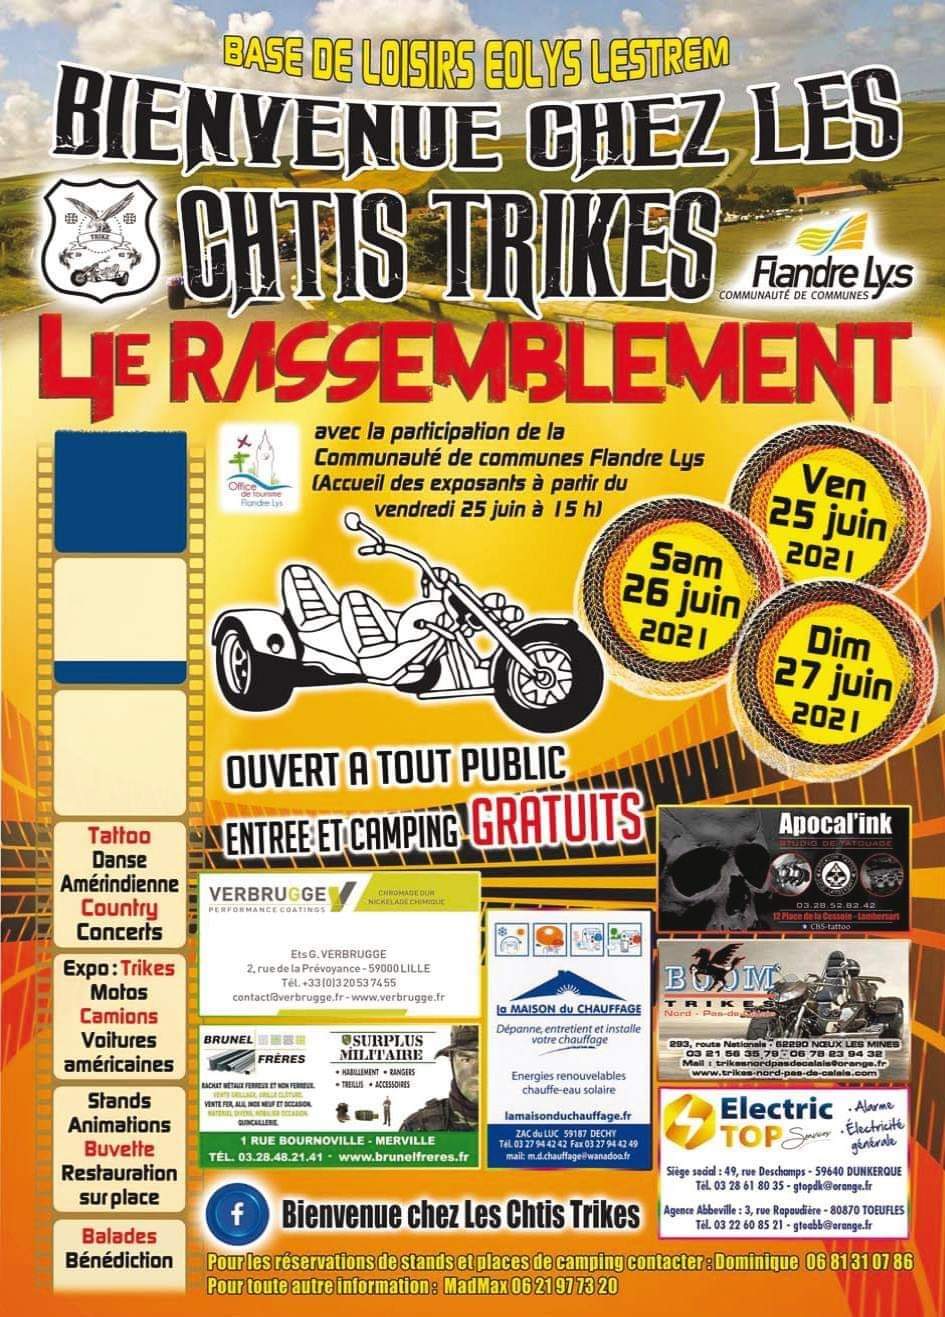 (59) - 25, 26&27 juin - 4ème rasso des Ch'tis Trikes à Eolys Lestrem Fb_im202